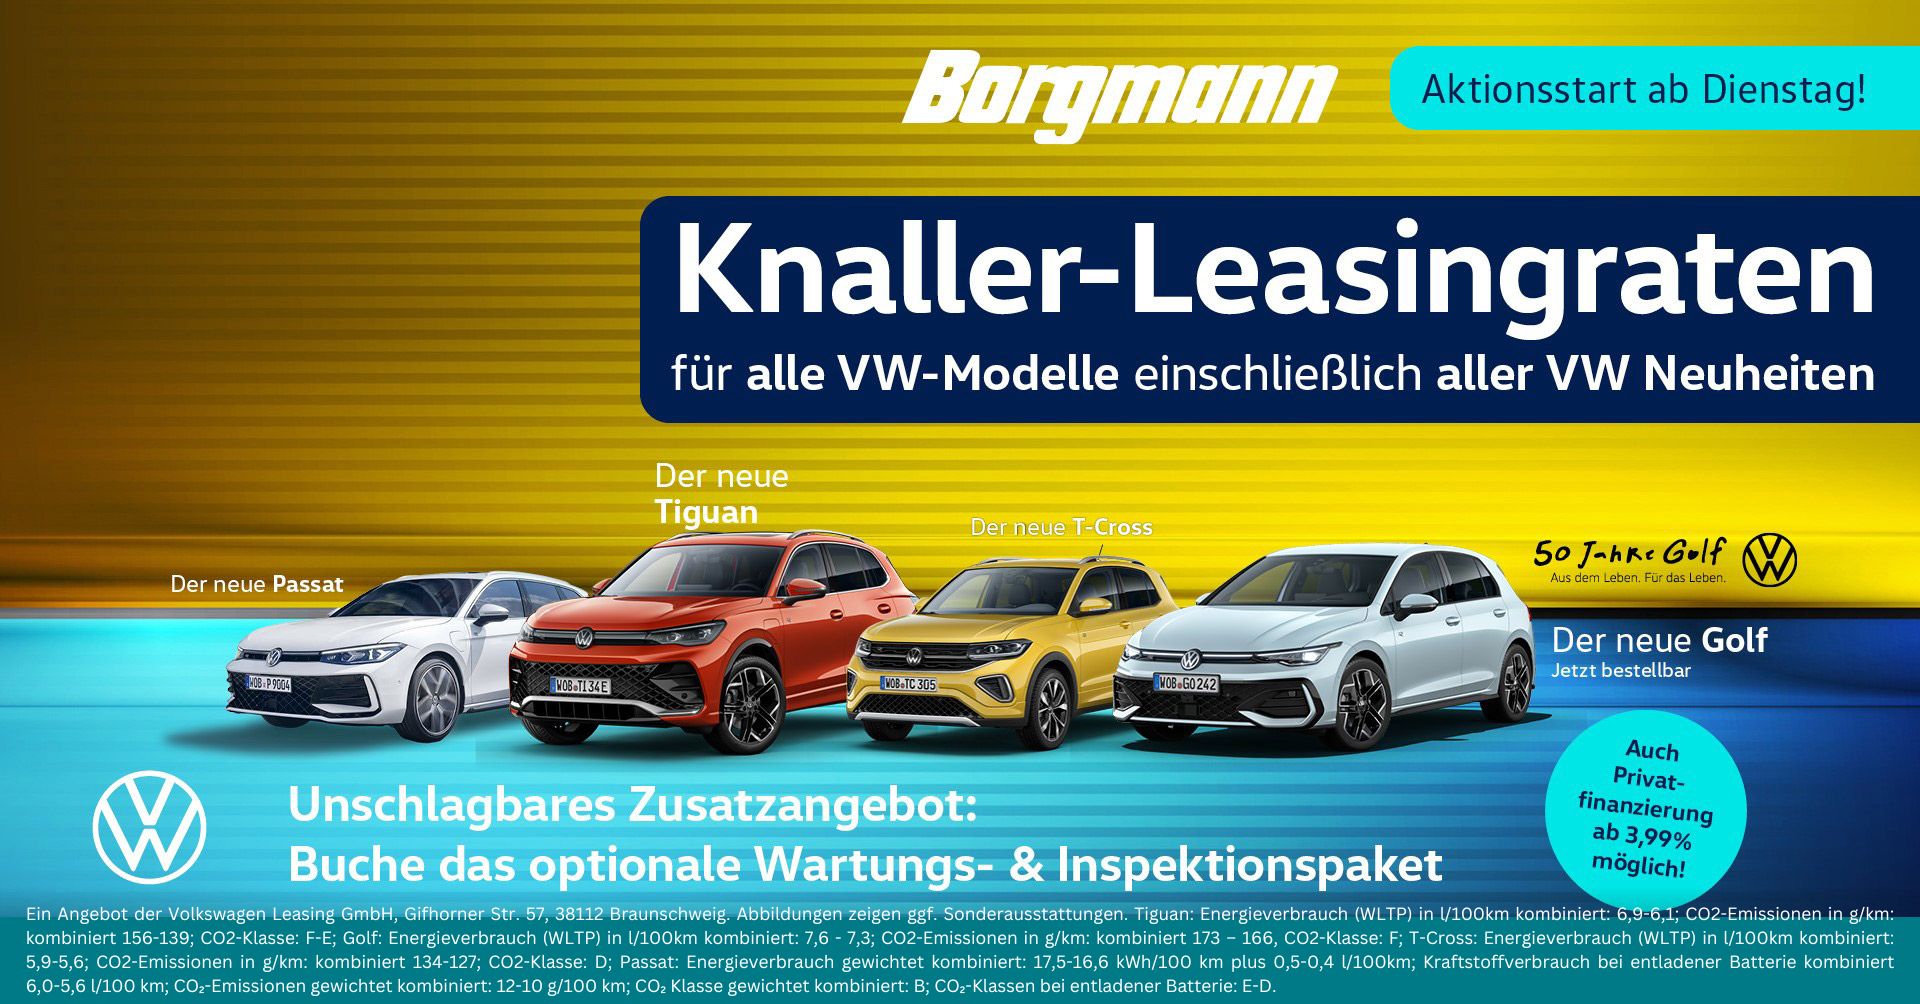 Verbesserte Leasingraten auf alle VW Modelle im Autohaus Borgmann!